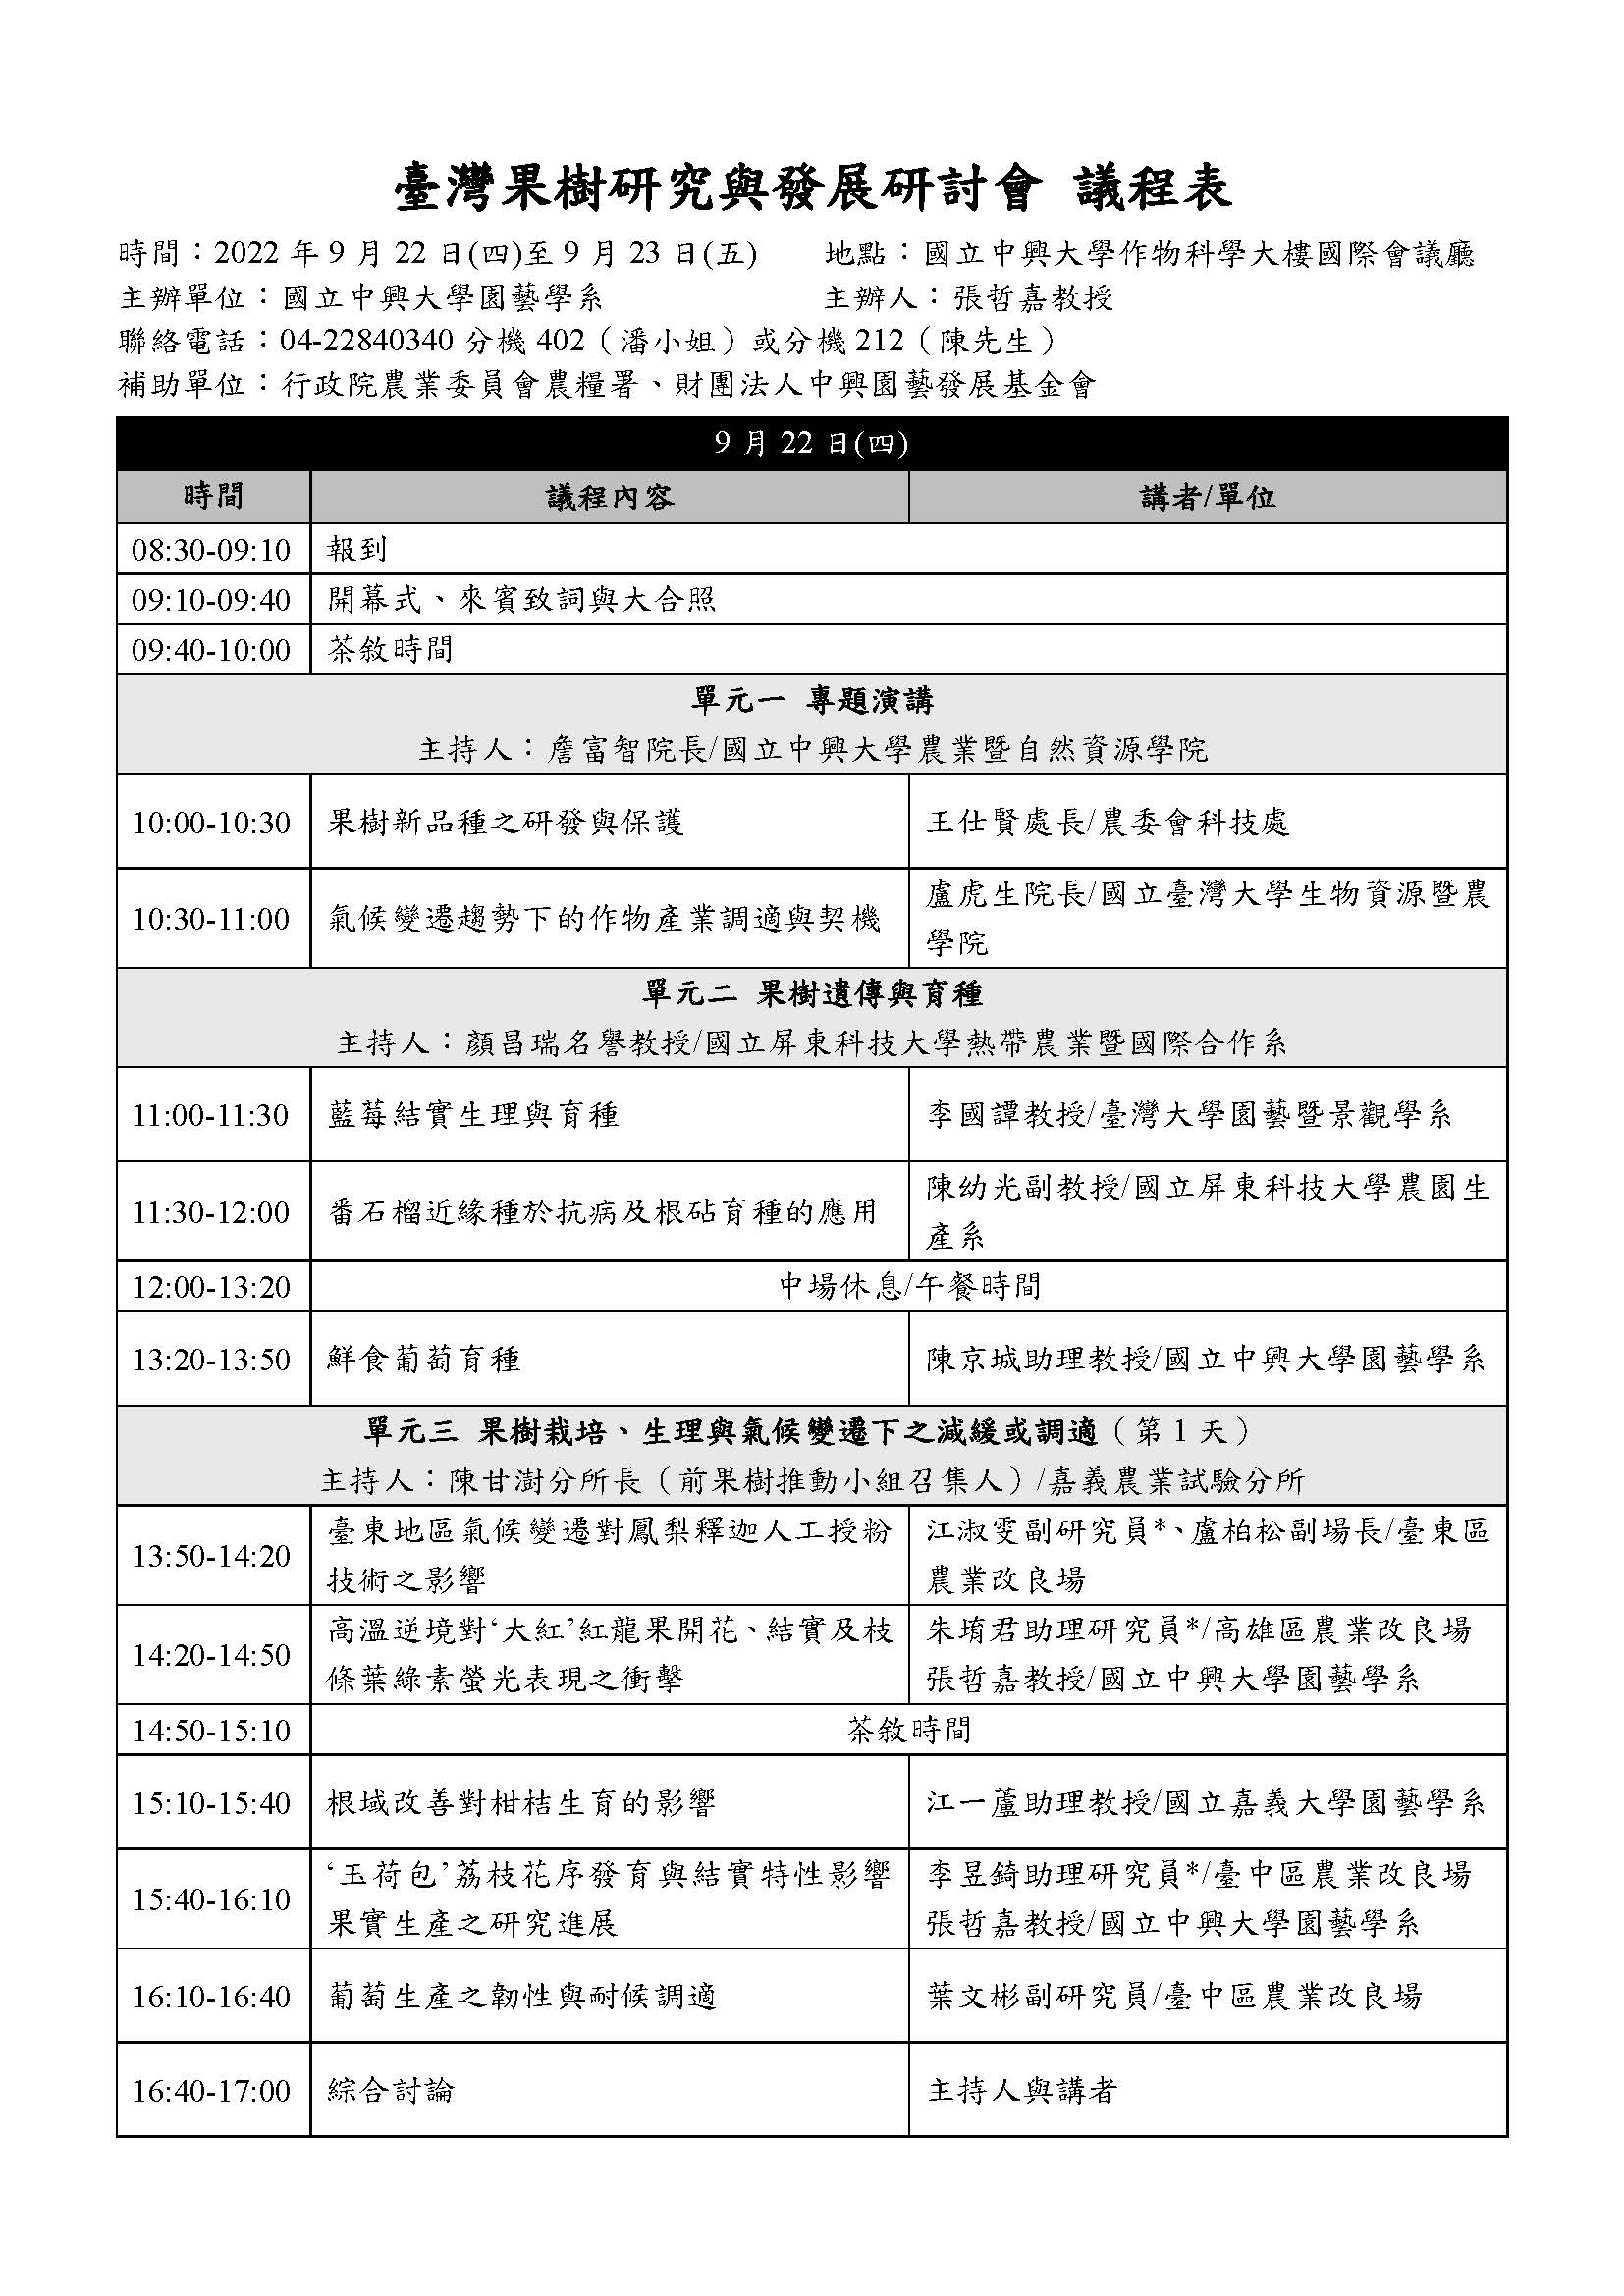 台灣果樹研究與發展研討會8月1日起開放報名(111年9月22日至9月23日)